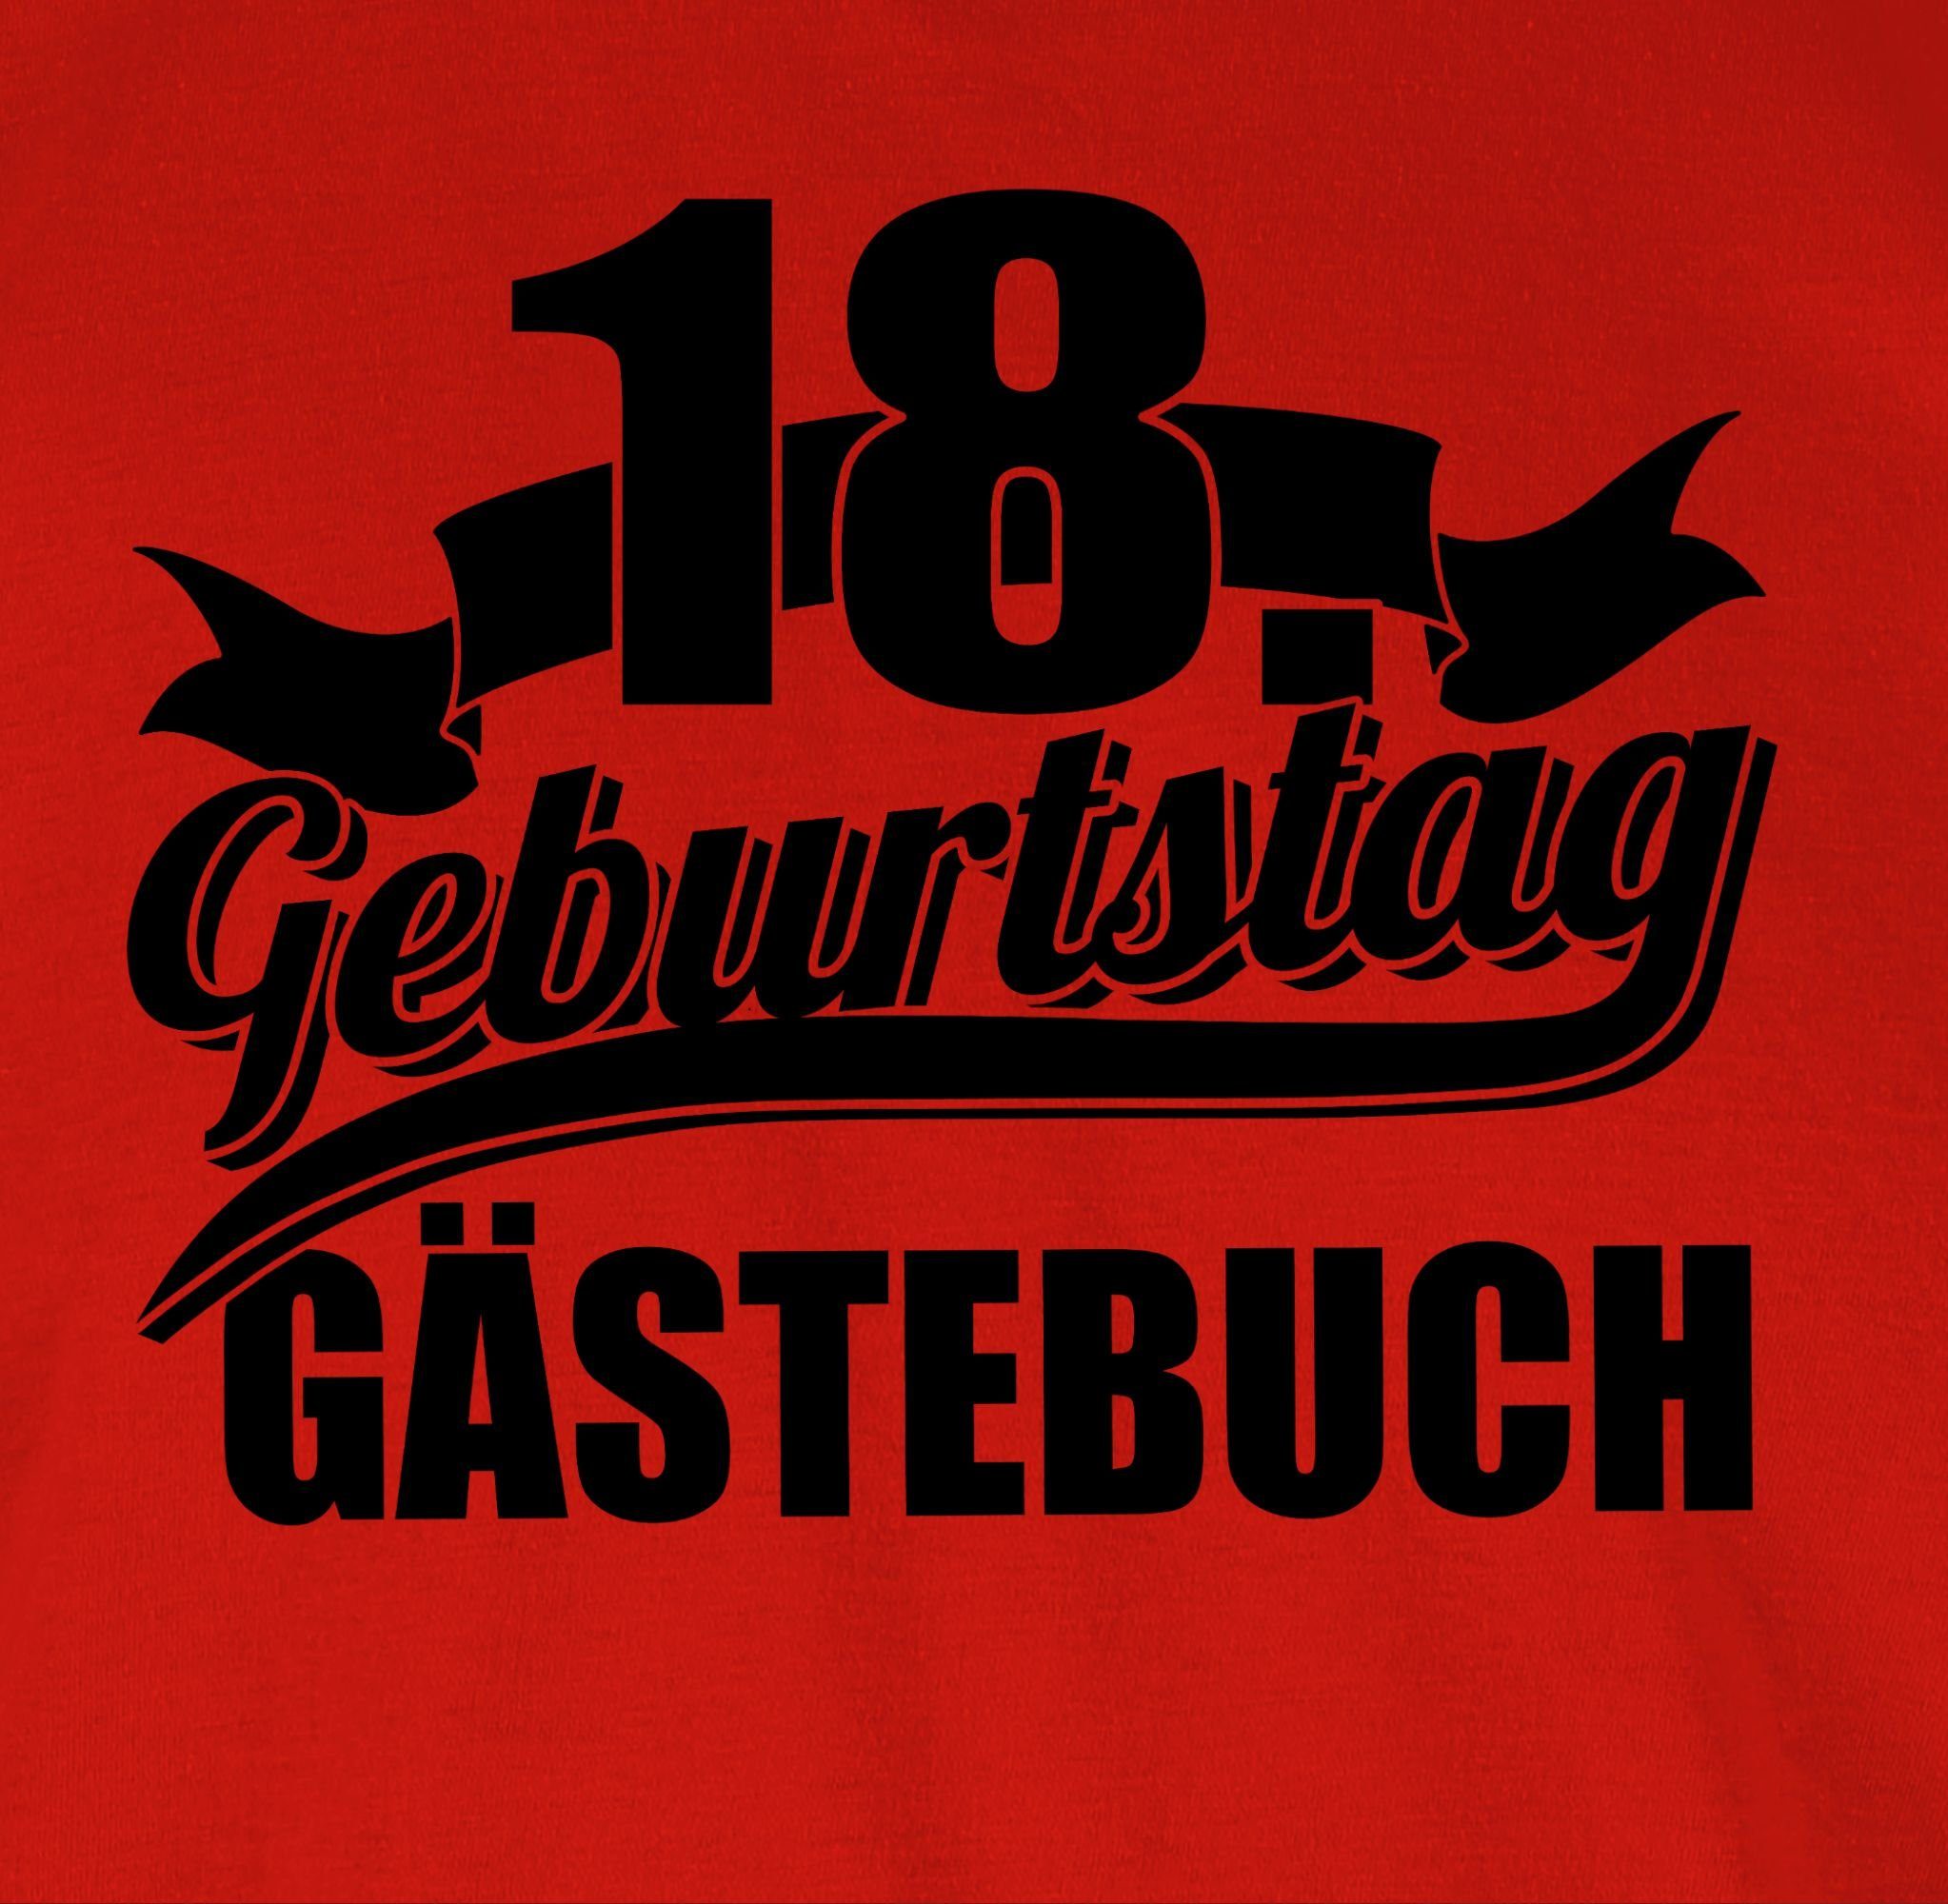 18. Rot Shirtracer Geburtstag Achtzehnter T-Shirt Geburtstag Gästebuch 3